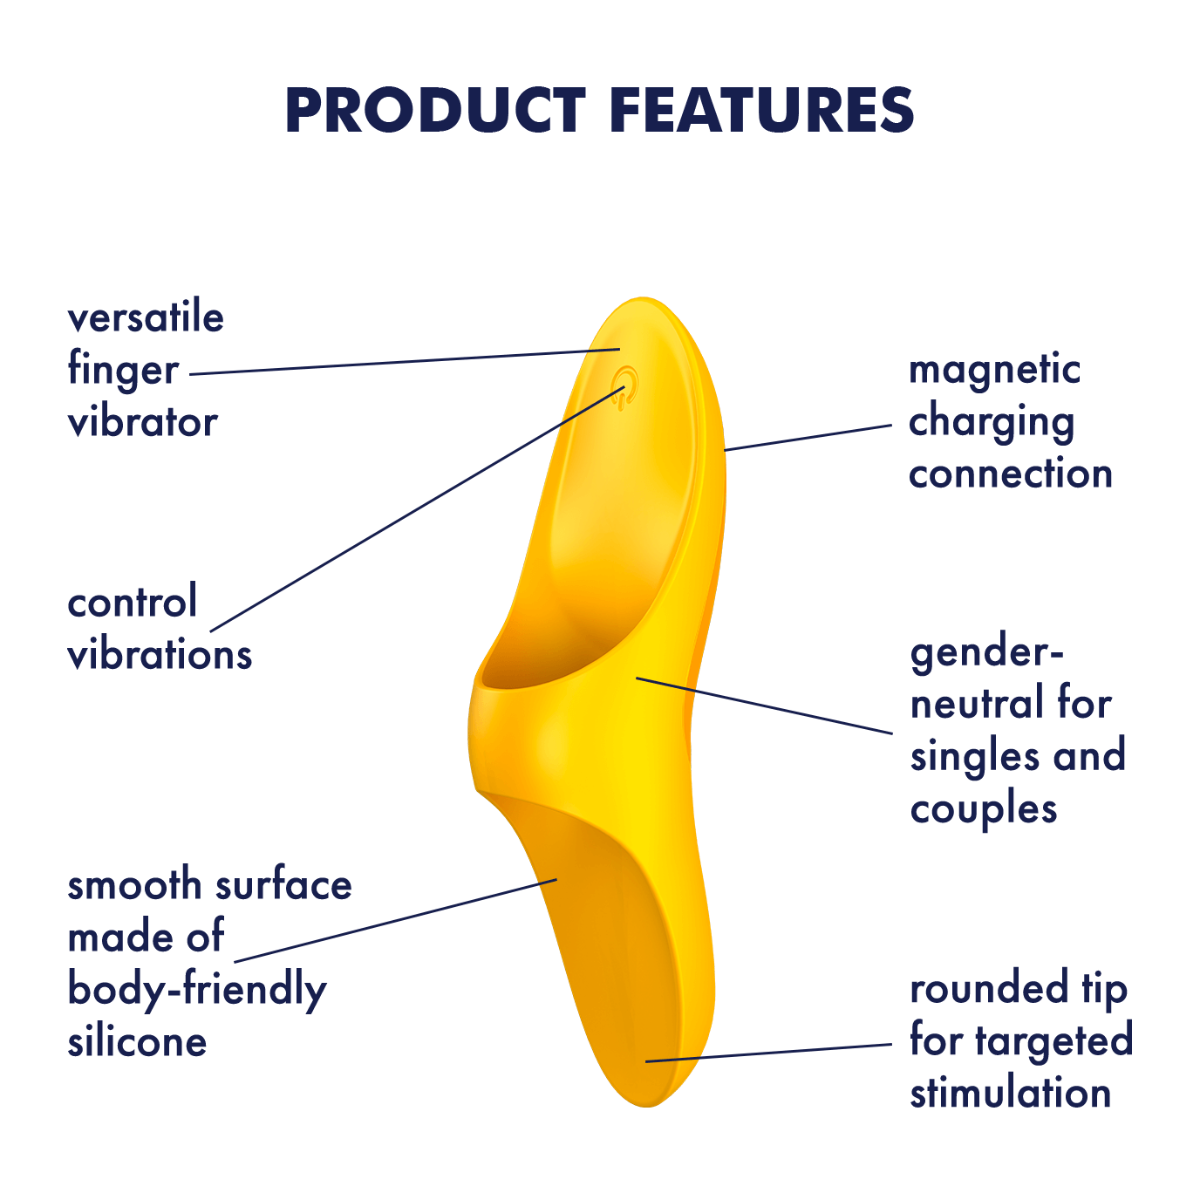 Satisfyer Teaser Finger Vibrator - Dark Yellow